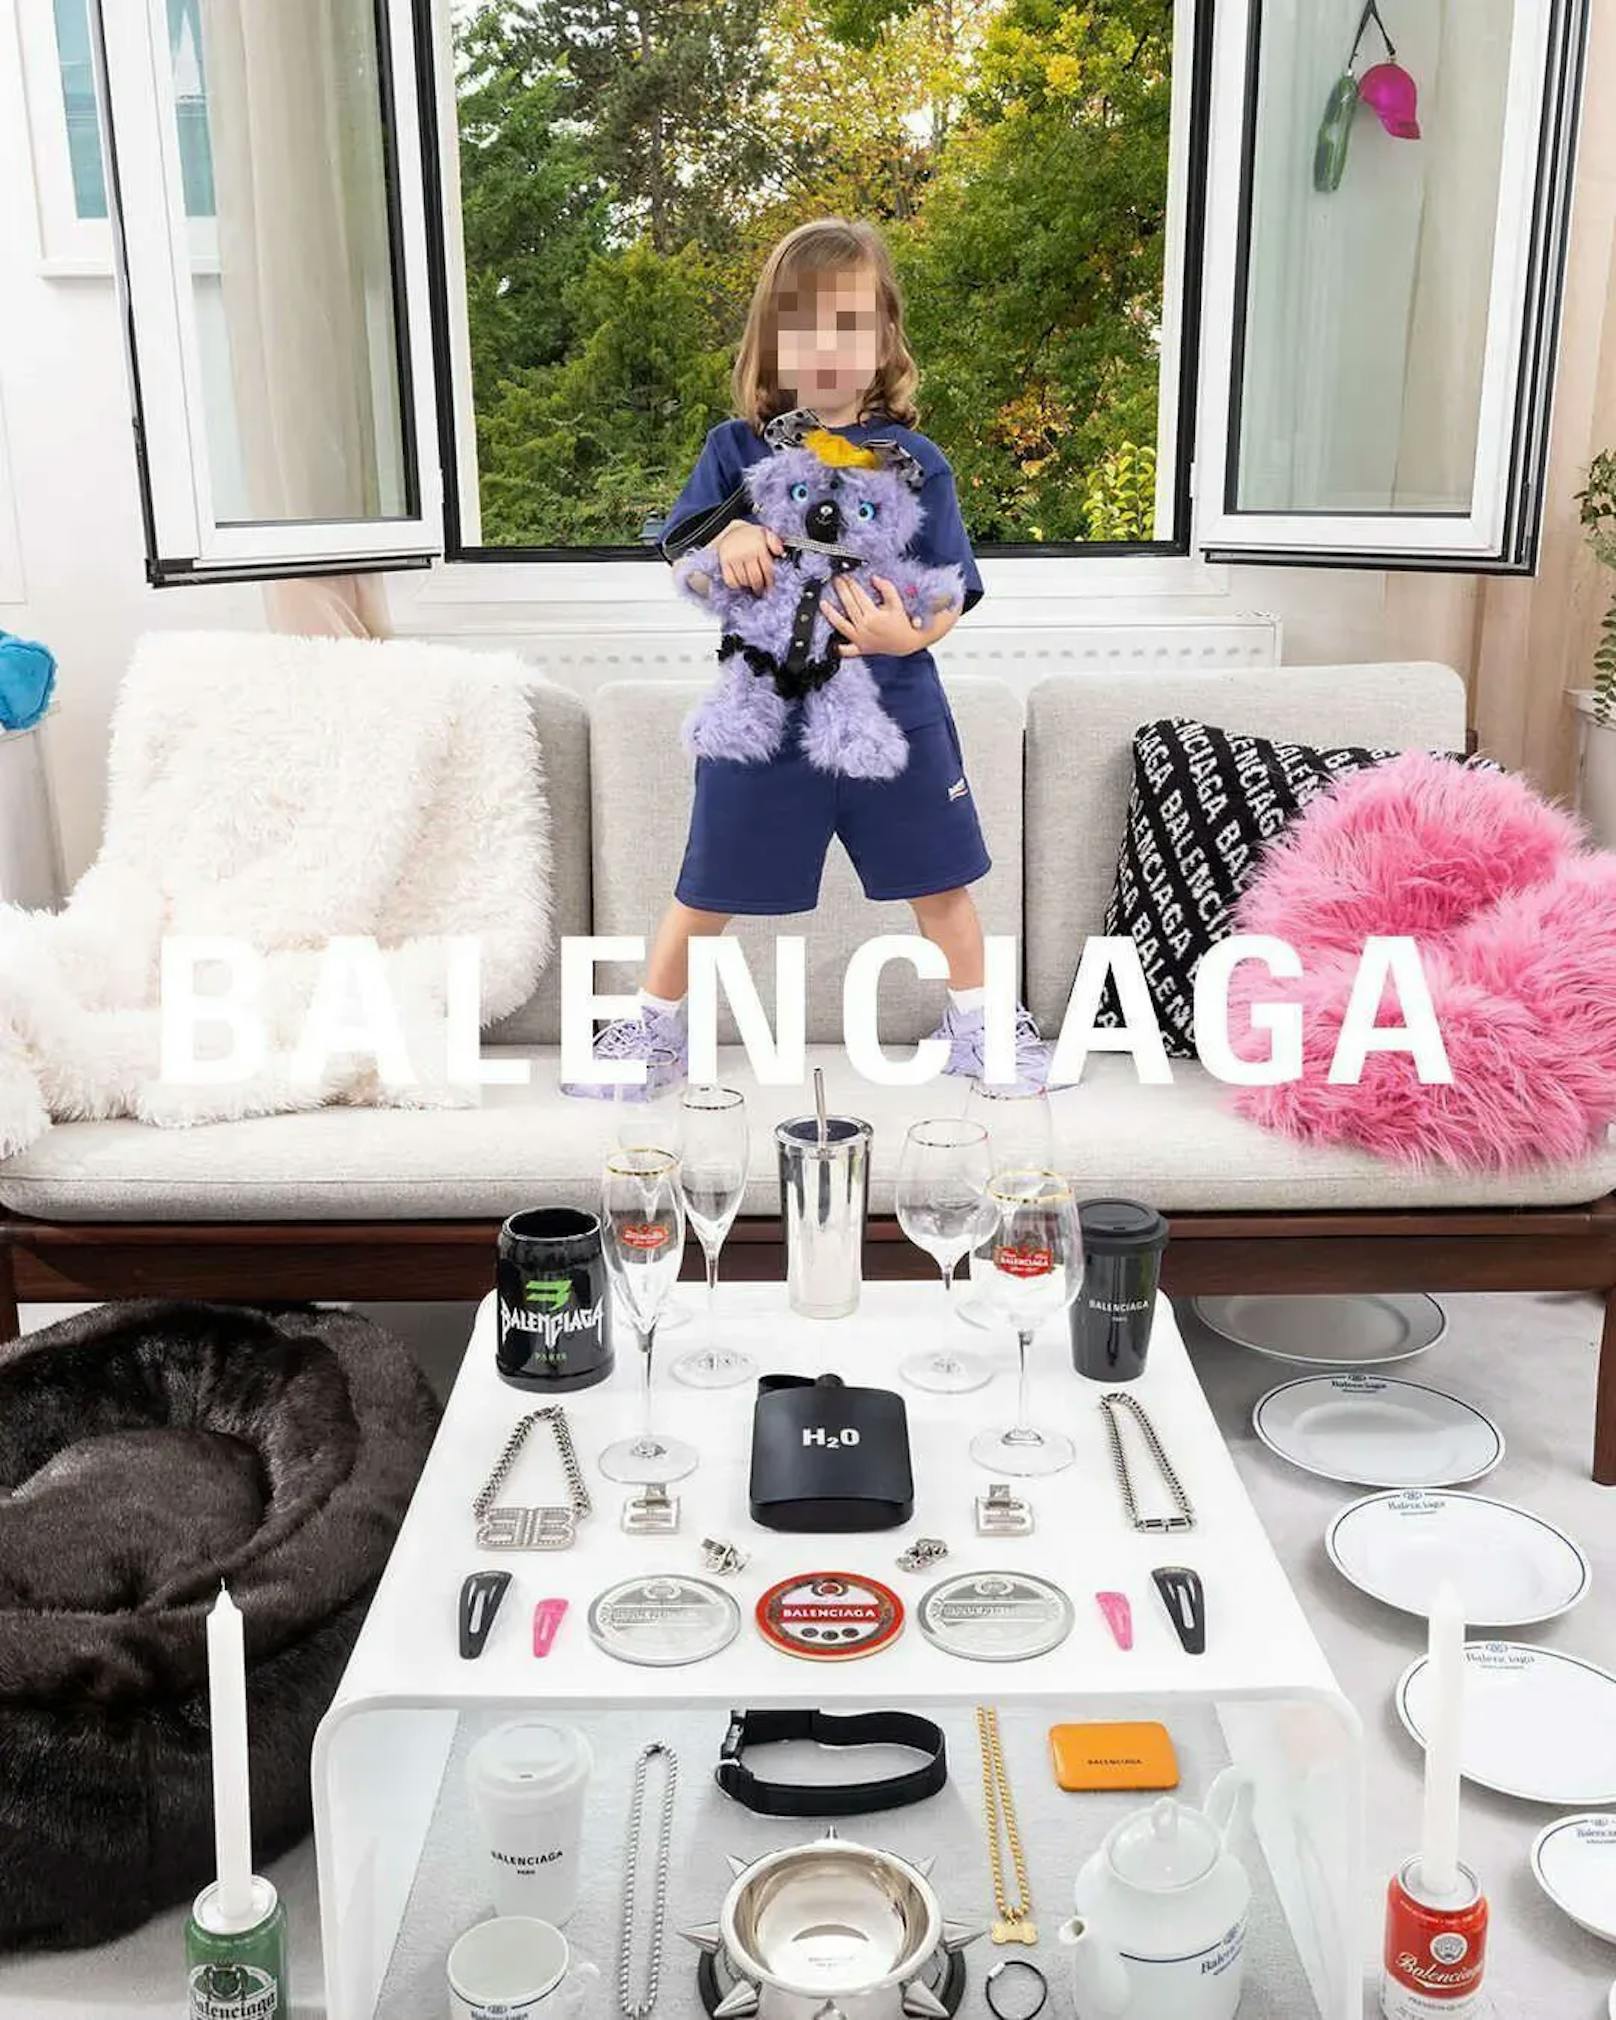 Die Balenciaga-Bilder von den Kindern mit den Bondage-Teddys in der Hand sorgen auf Social Media für Empörung.